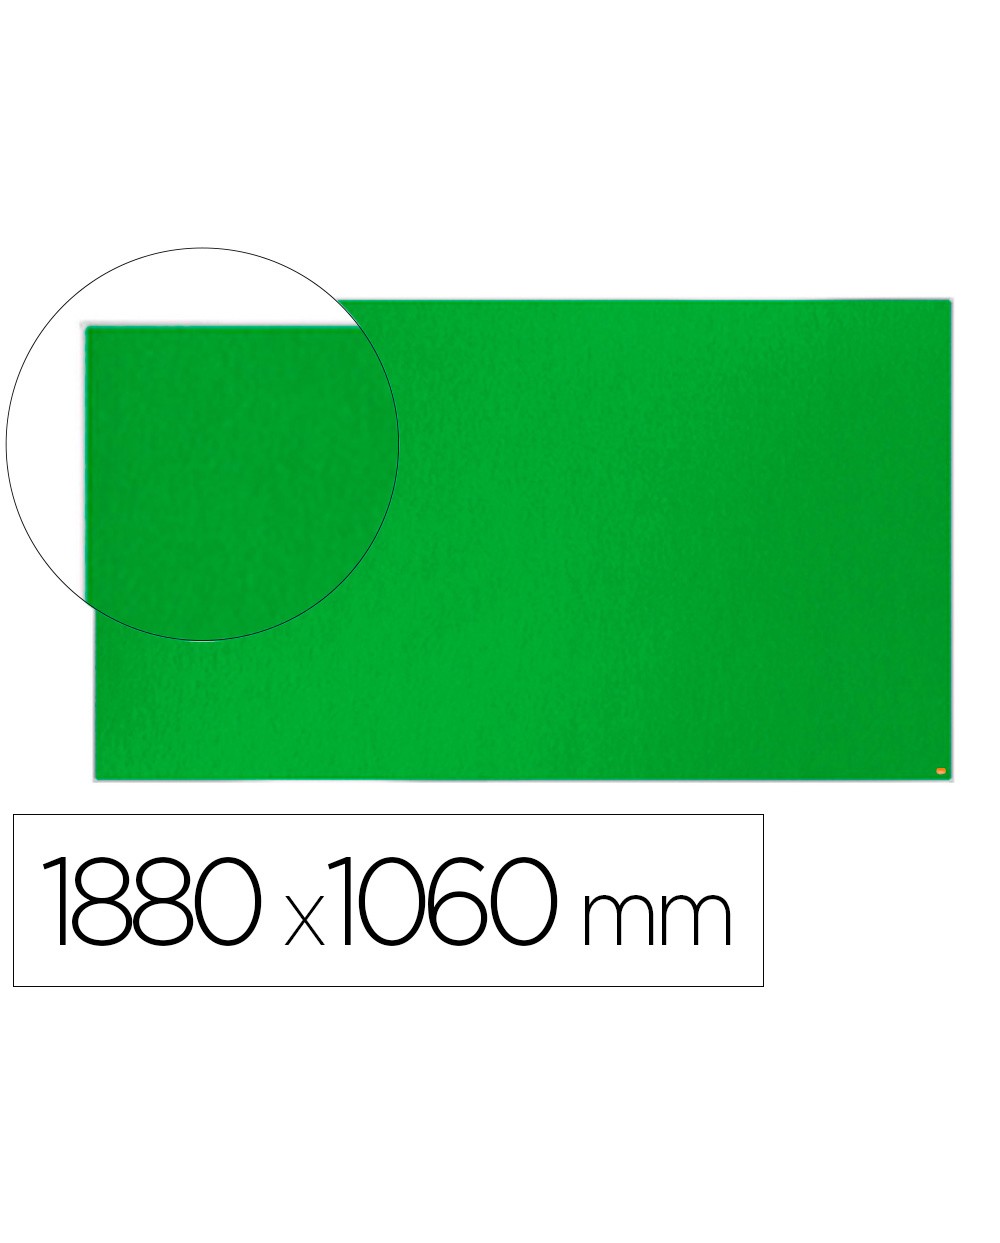 Tablero de anuncios nobo impression pro fieltro verde formato panoramico 85 1880x1060 mm